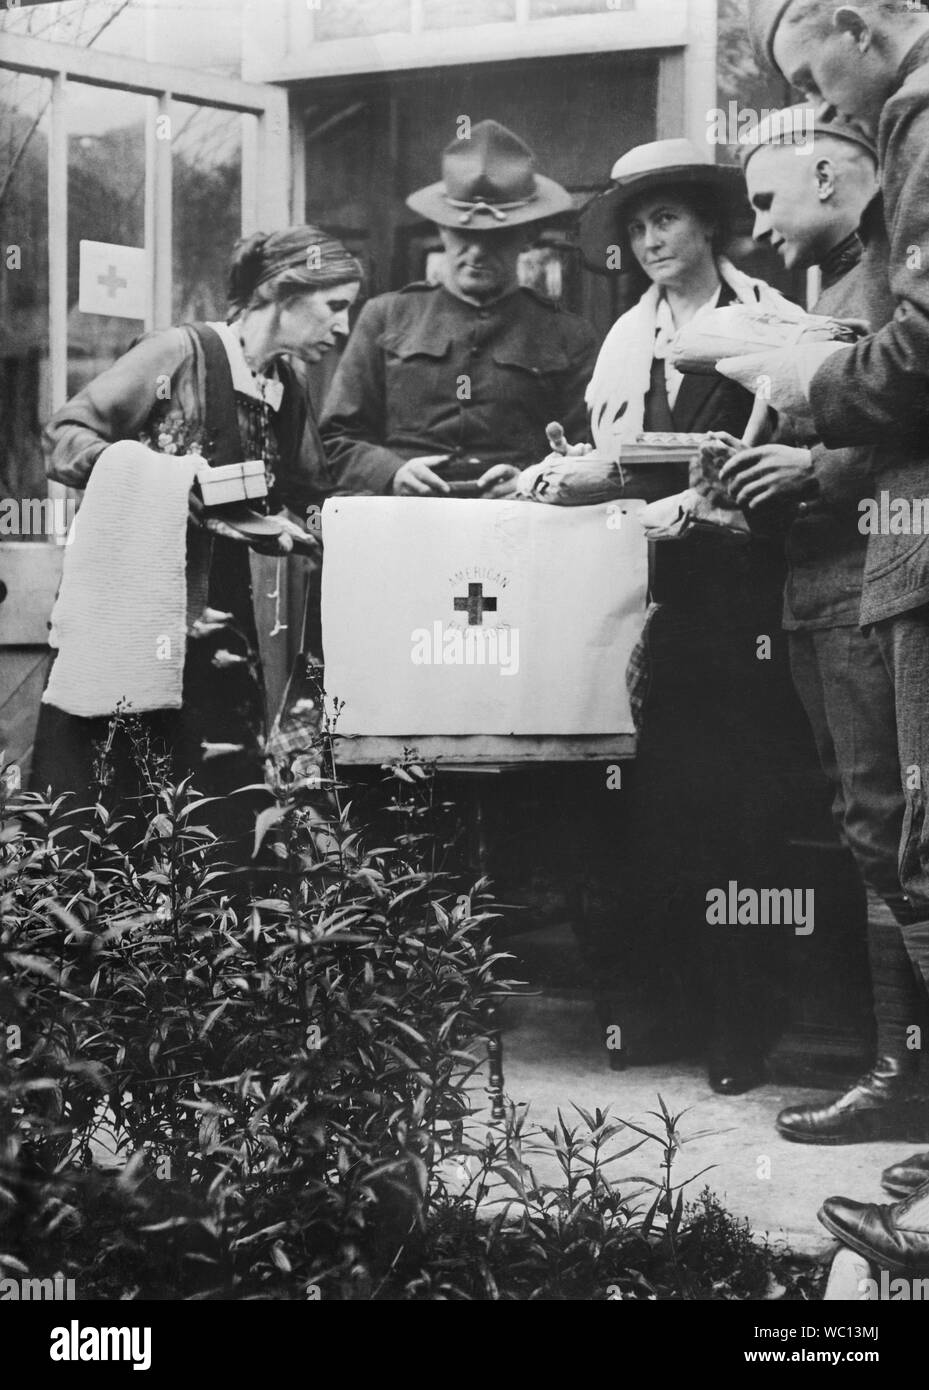 L'Armée américaine, le Lieutenant Robert E. Lee superviser l'emballage de la Croix-Rouge offre de soins par les femmes de la Croix-Rouge américaine Care Committee, Newcastle, Angleterre, RU, photo de American National Red Cross, Novembre 1918 Banque D'Images